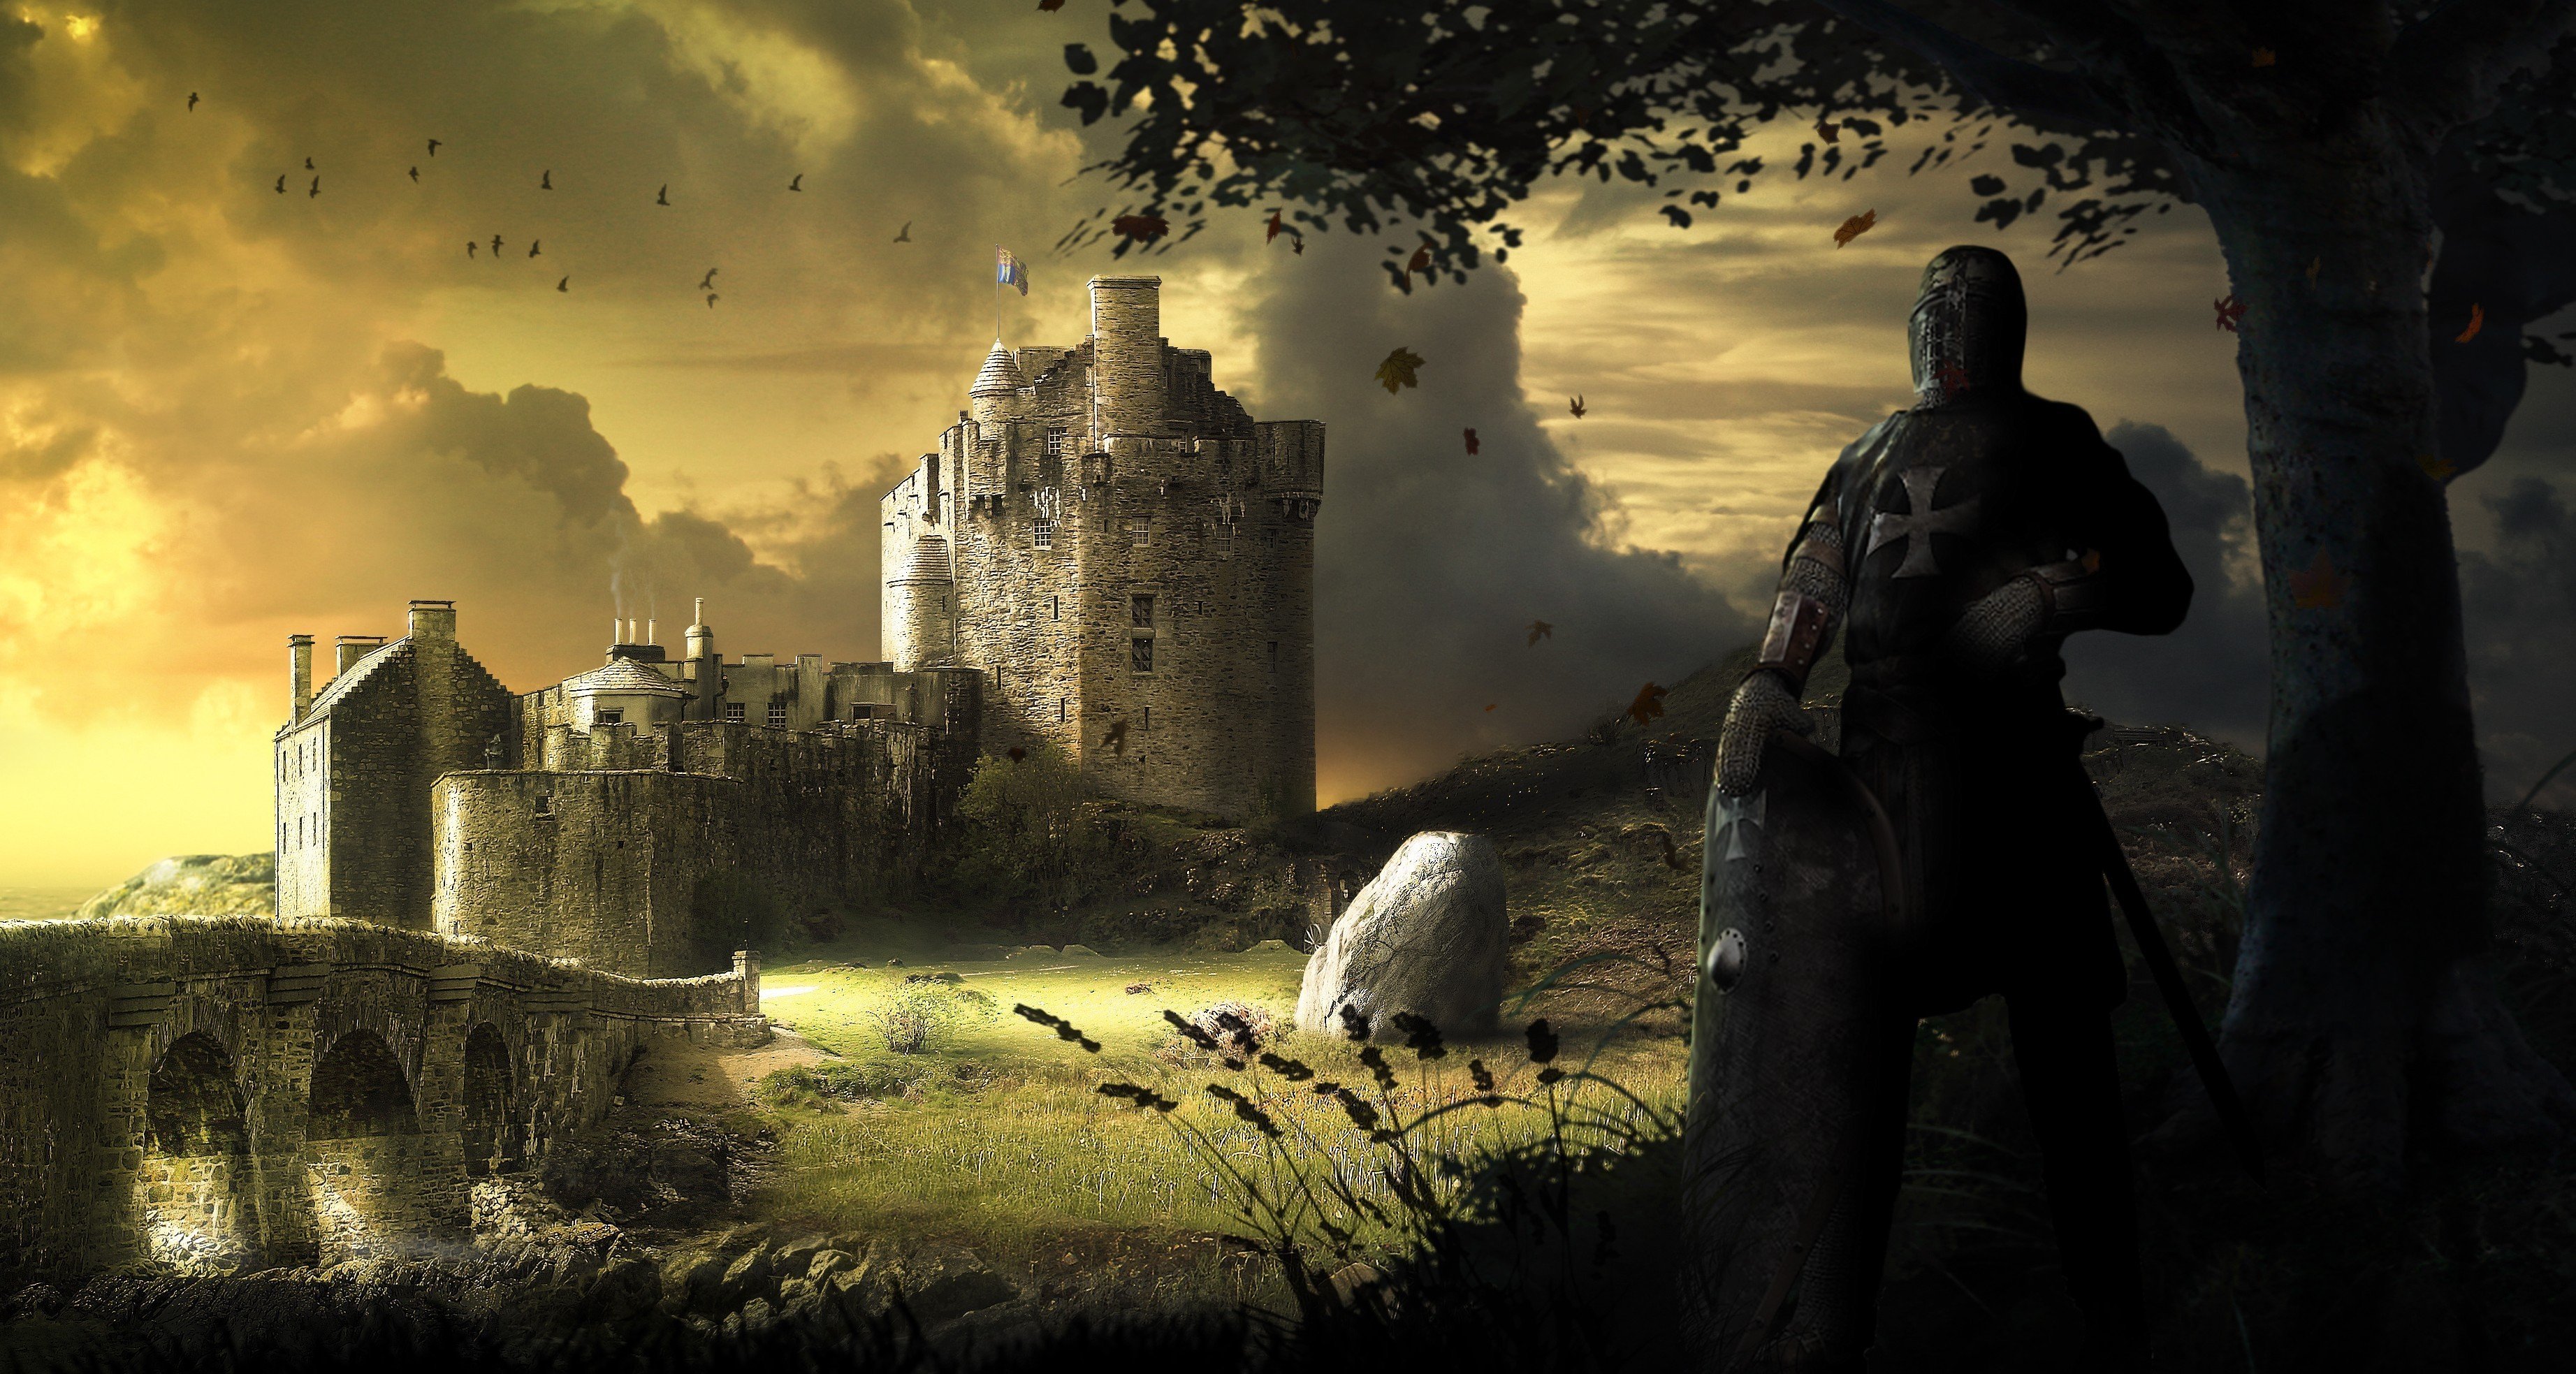 Castles fantasy art wallpaper. PC